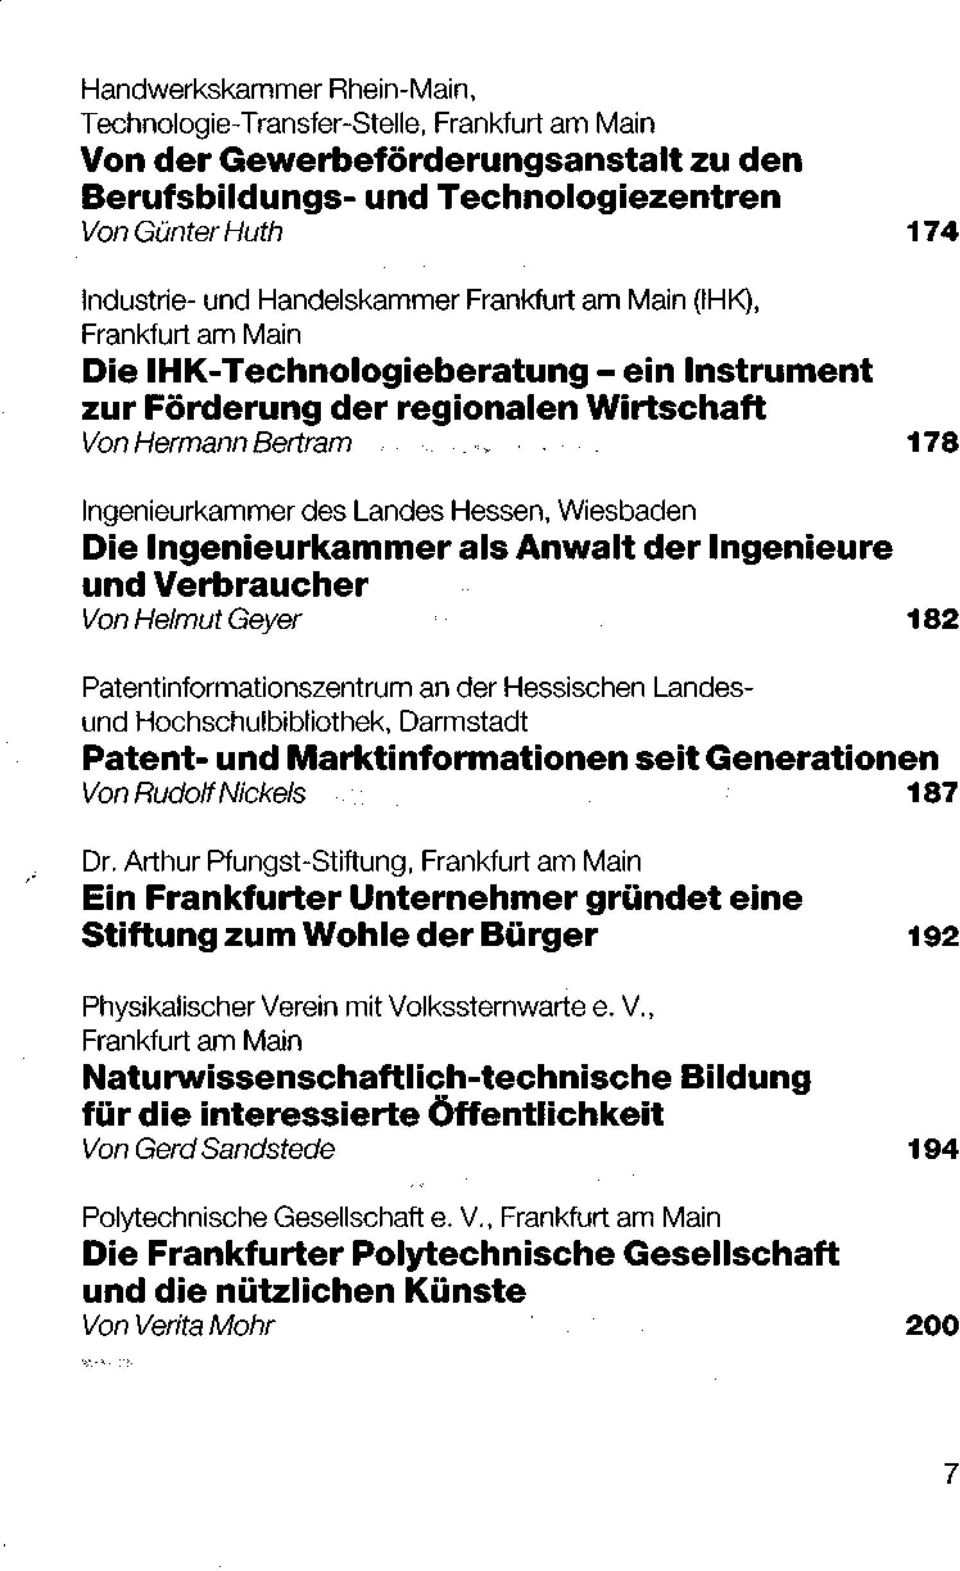 Verbraucher Von Helmut Geyer 182 Patentinformationszentrum an der Hessischen Landesund Hochschulbibliothek, Darmstadt Patent- und Marktinformationen seit Generationen Von Rudolf Nickels 187 Dr.